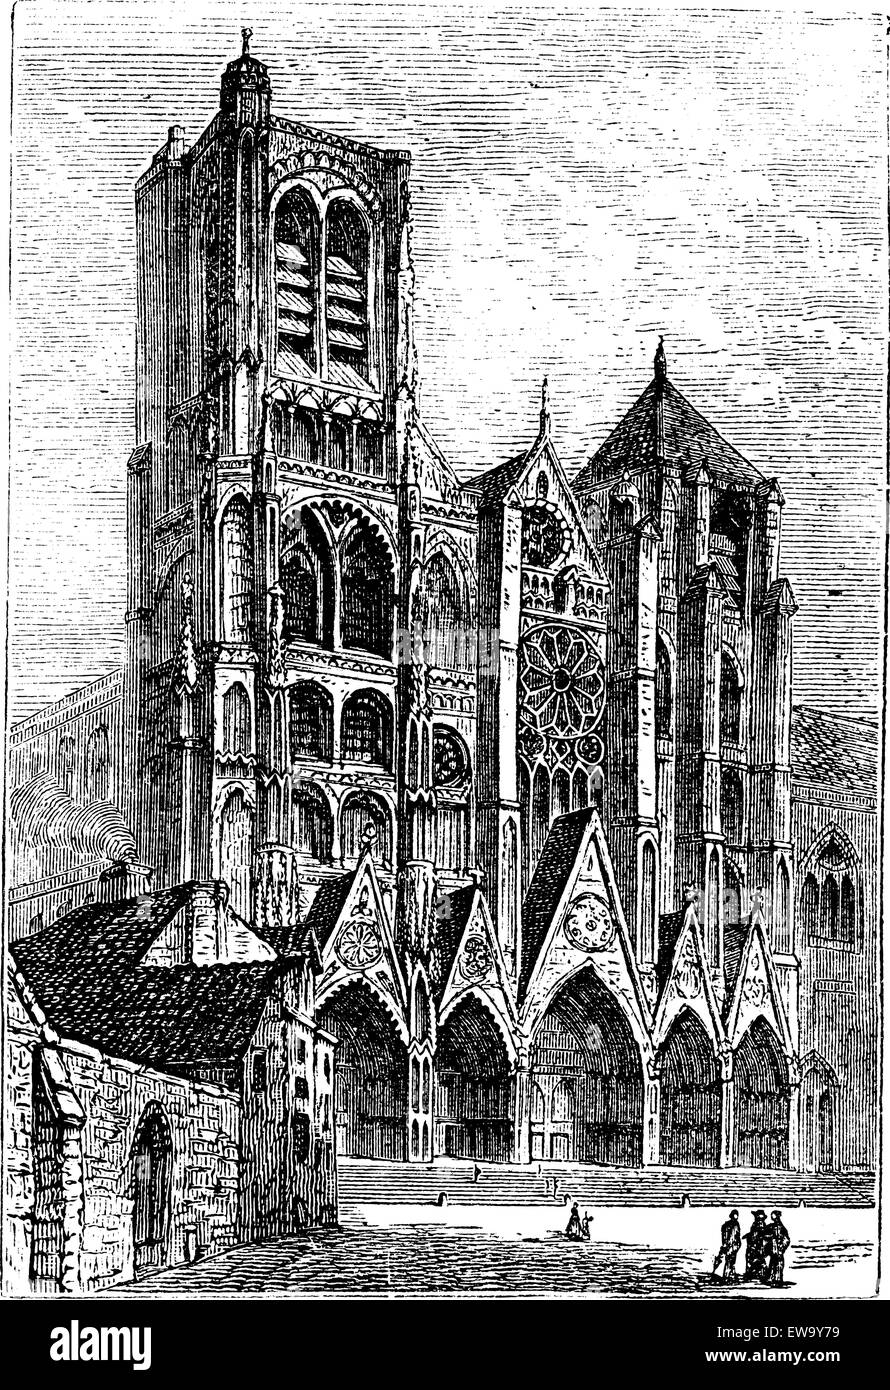 La Cathédrale de Bourges, à Bourges, France vintage la gravure. Vieille illustration gravée de la cathédrale de Bourges avant, pendant la Illustration de Vecteur